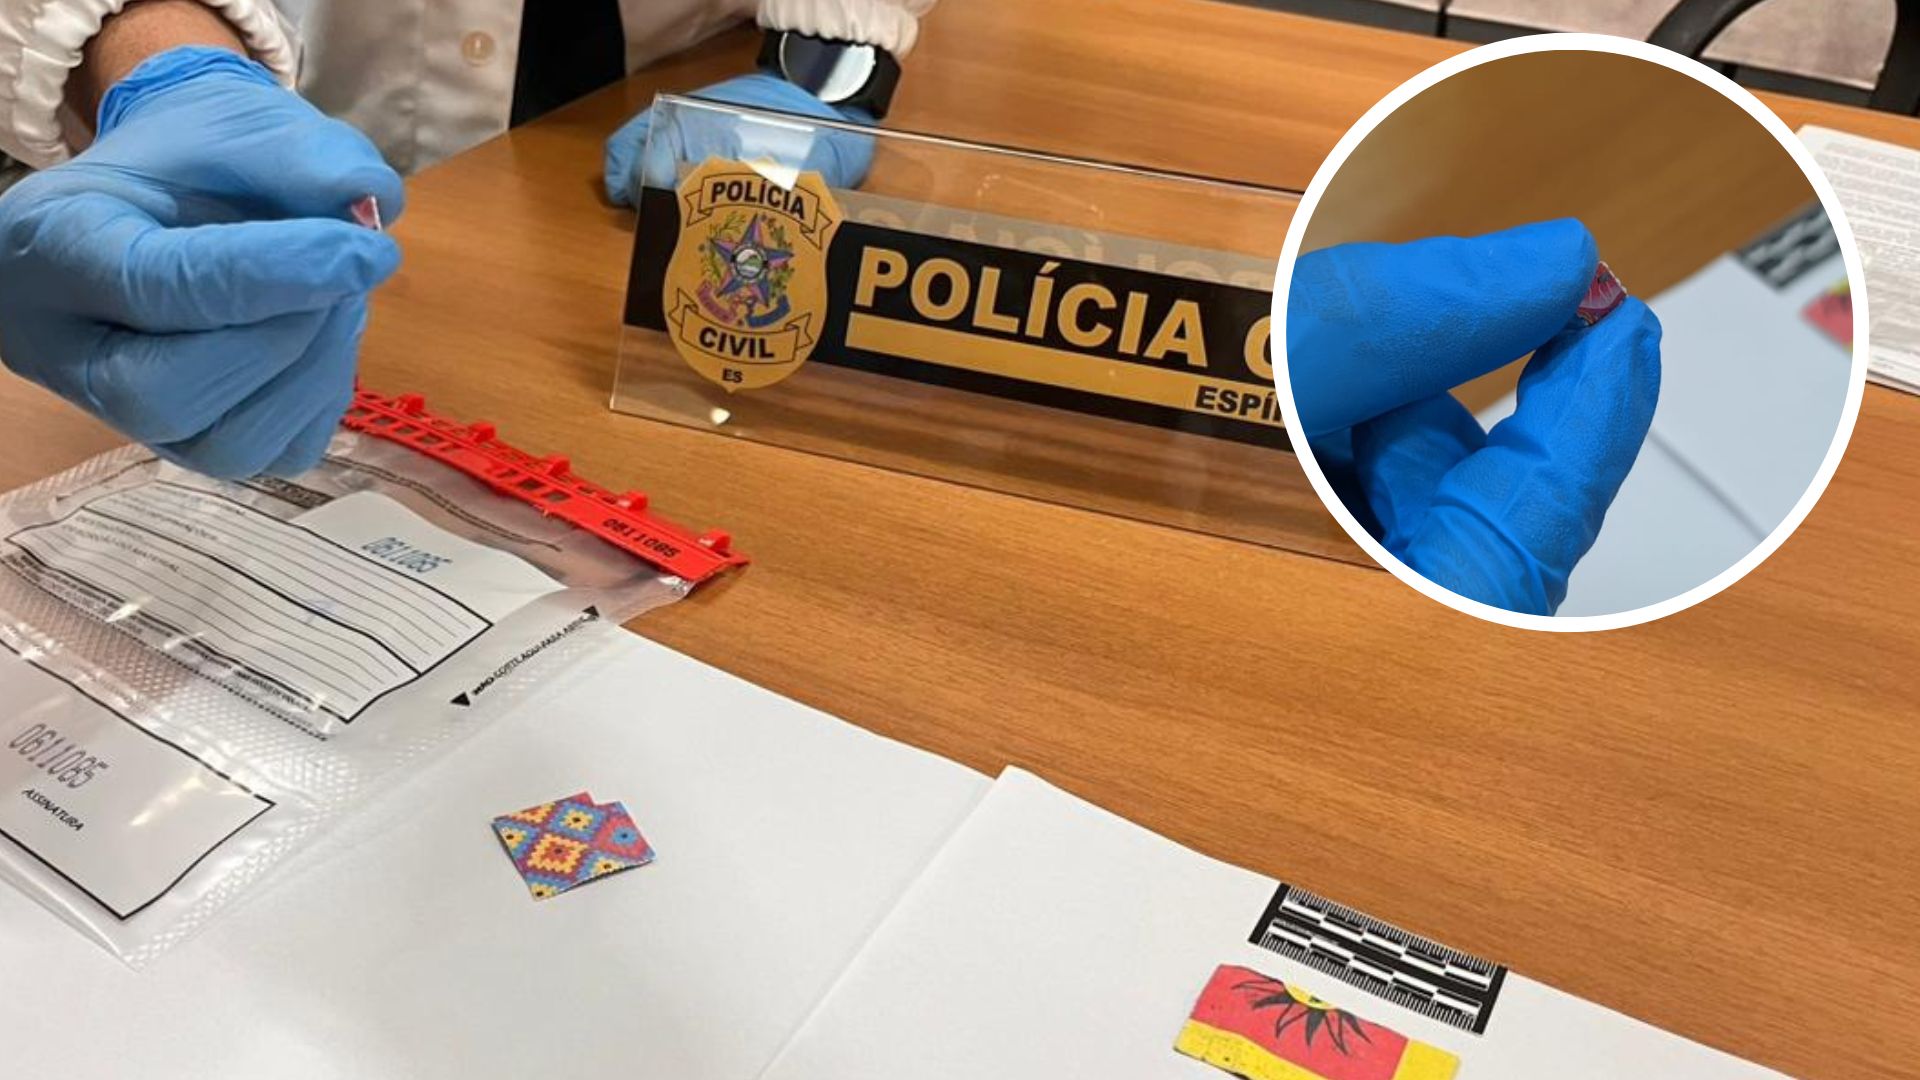 Substância foi encontrada no organismo de DJ de 37 anos encontrado morto em motel da Serra e, a partir daí, polícia descobriu que ainda não havia relatos dessa situação no país